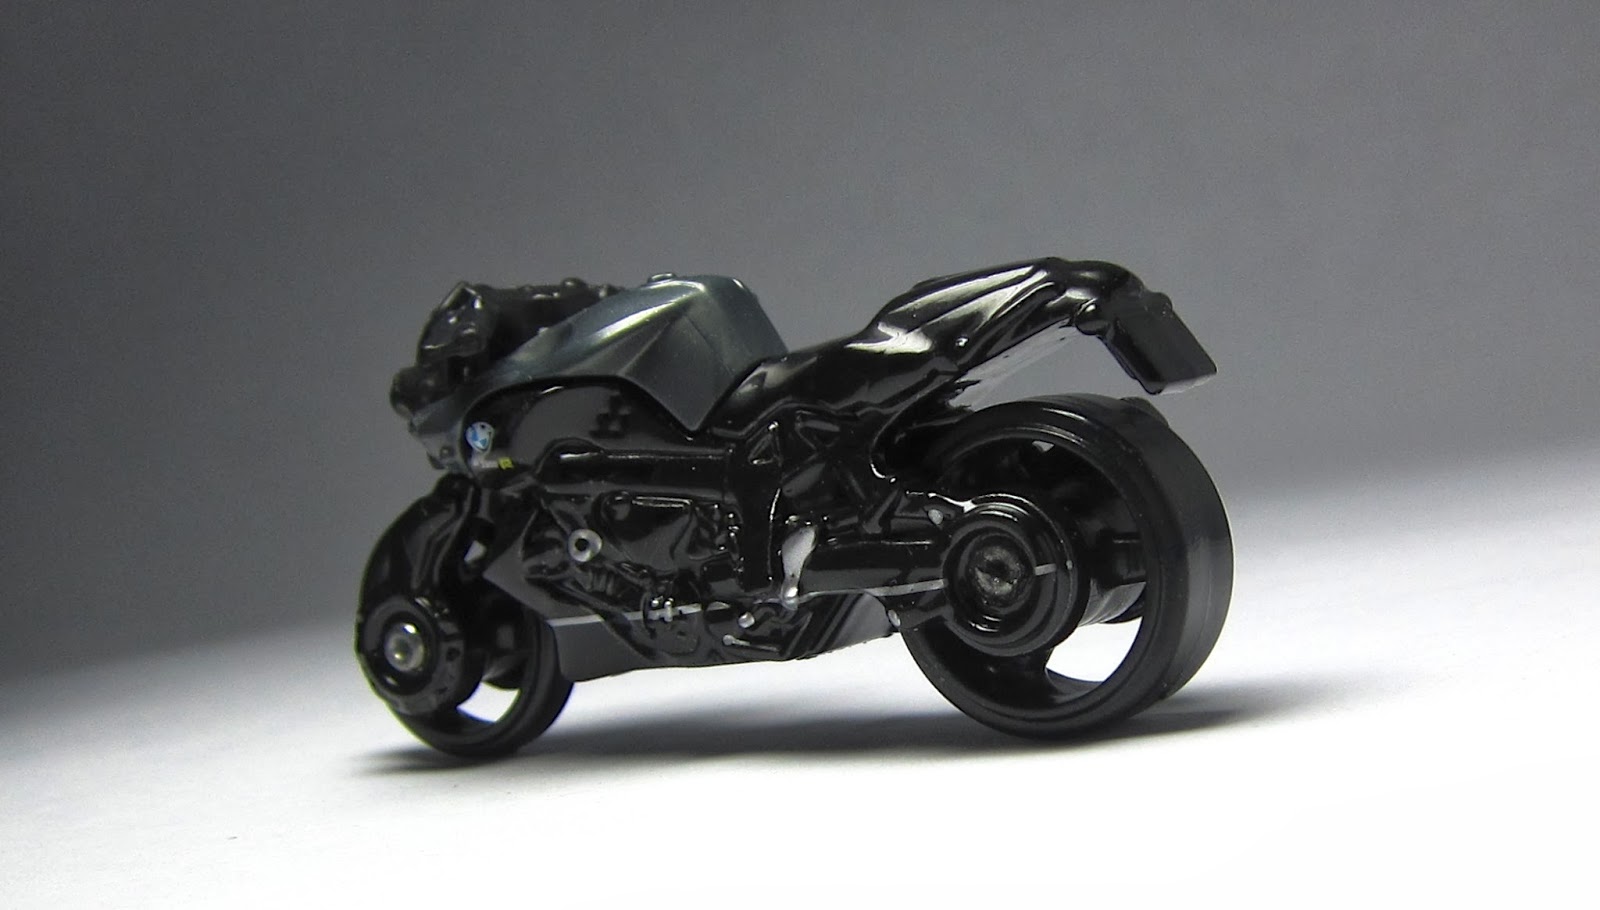 Best Motorcycle 2014: First Look: 2014 Hot Wheels BMW K1300 R Motorcycle...